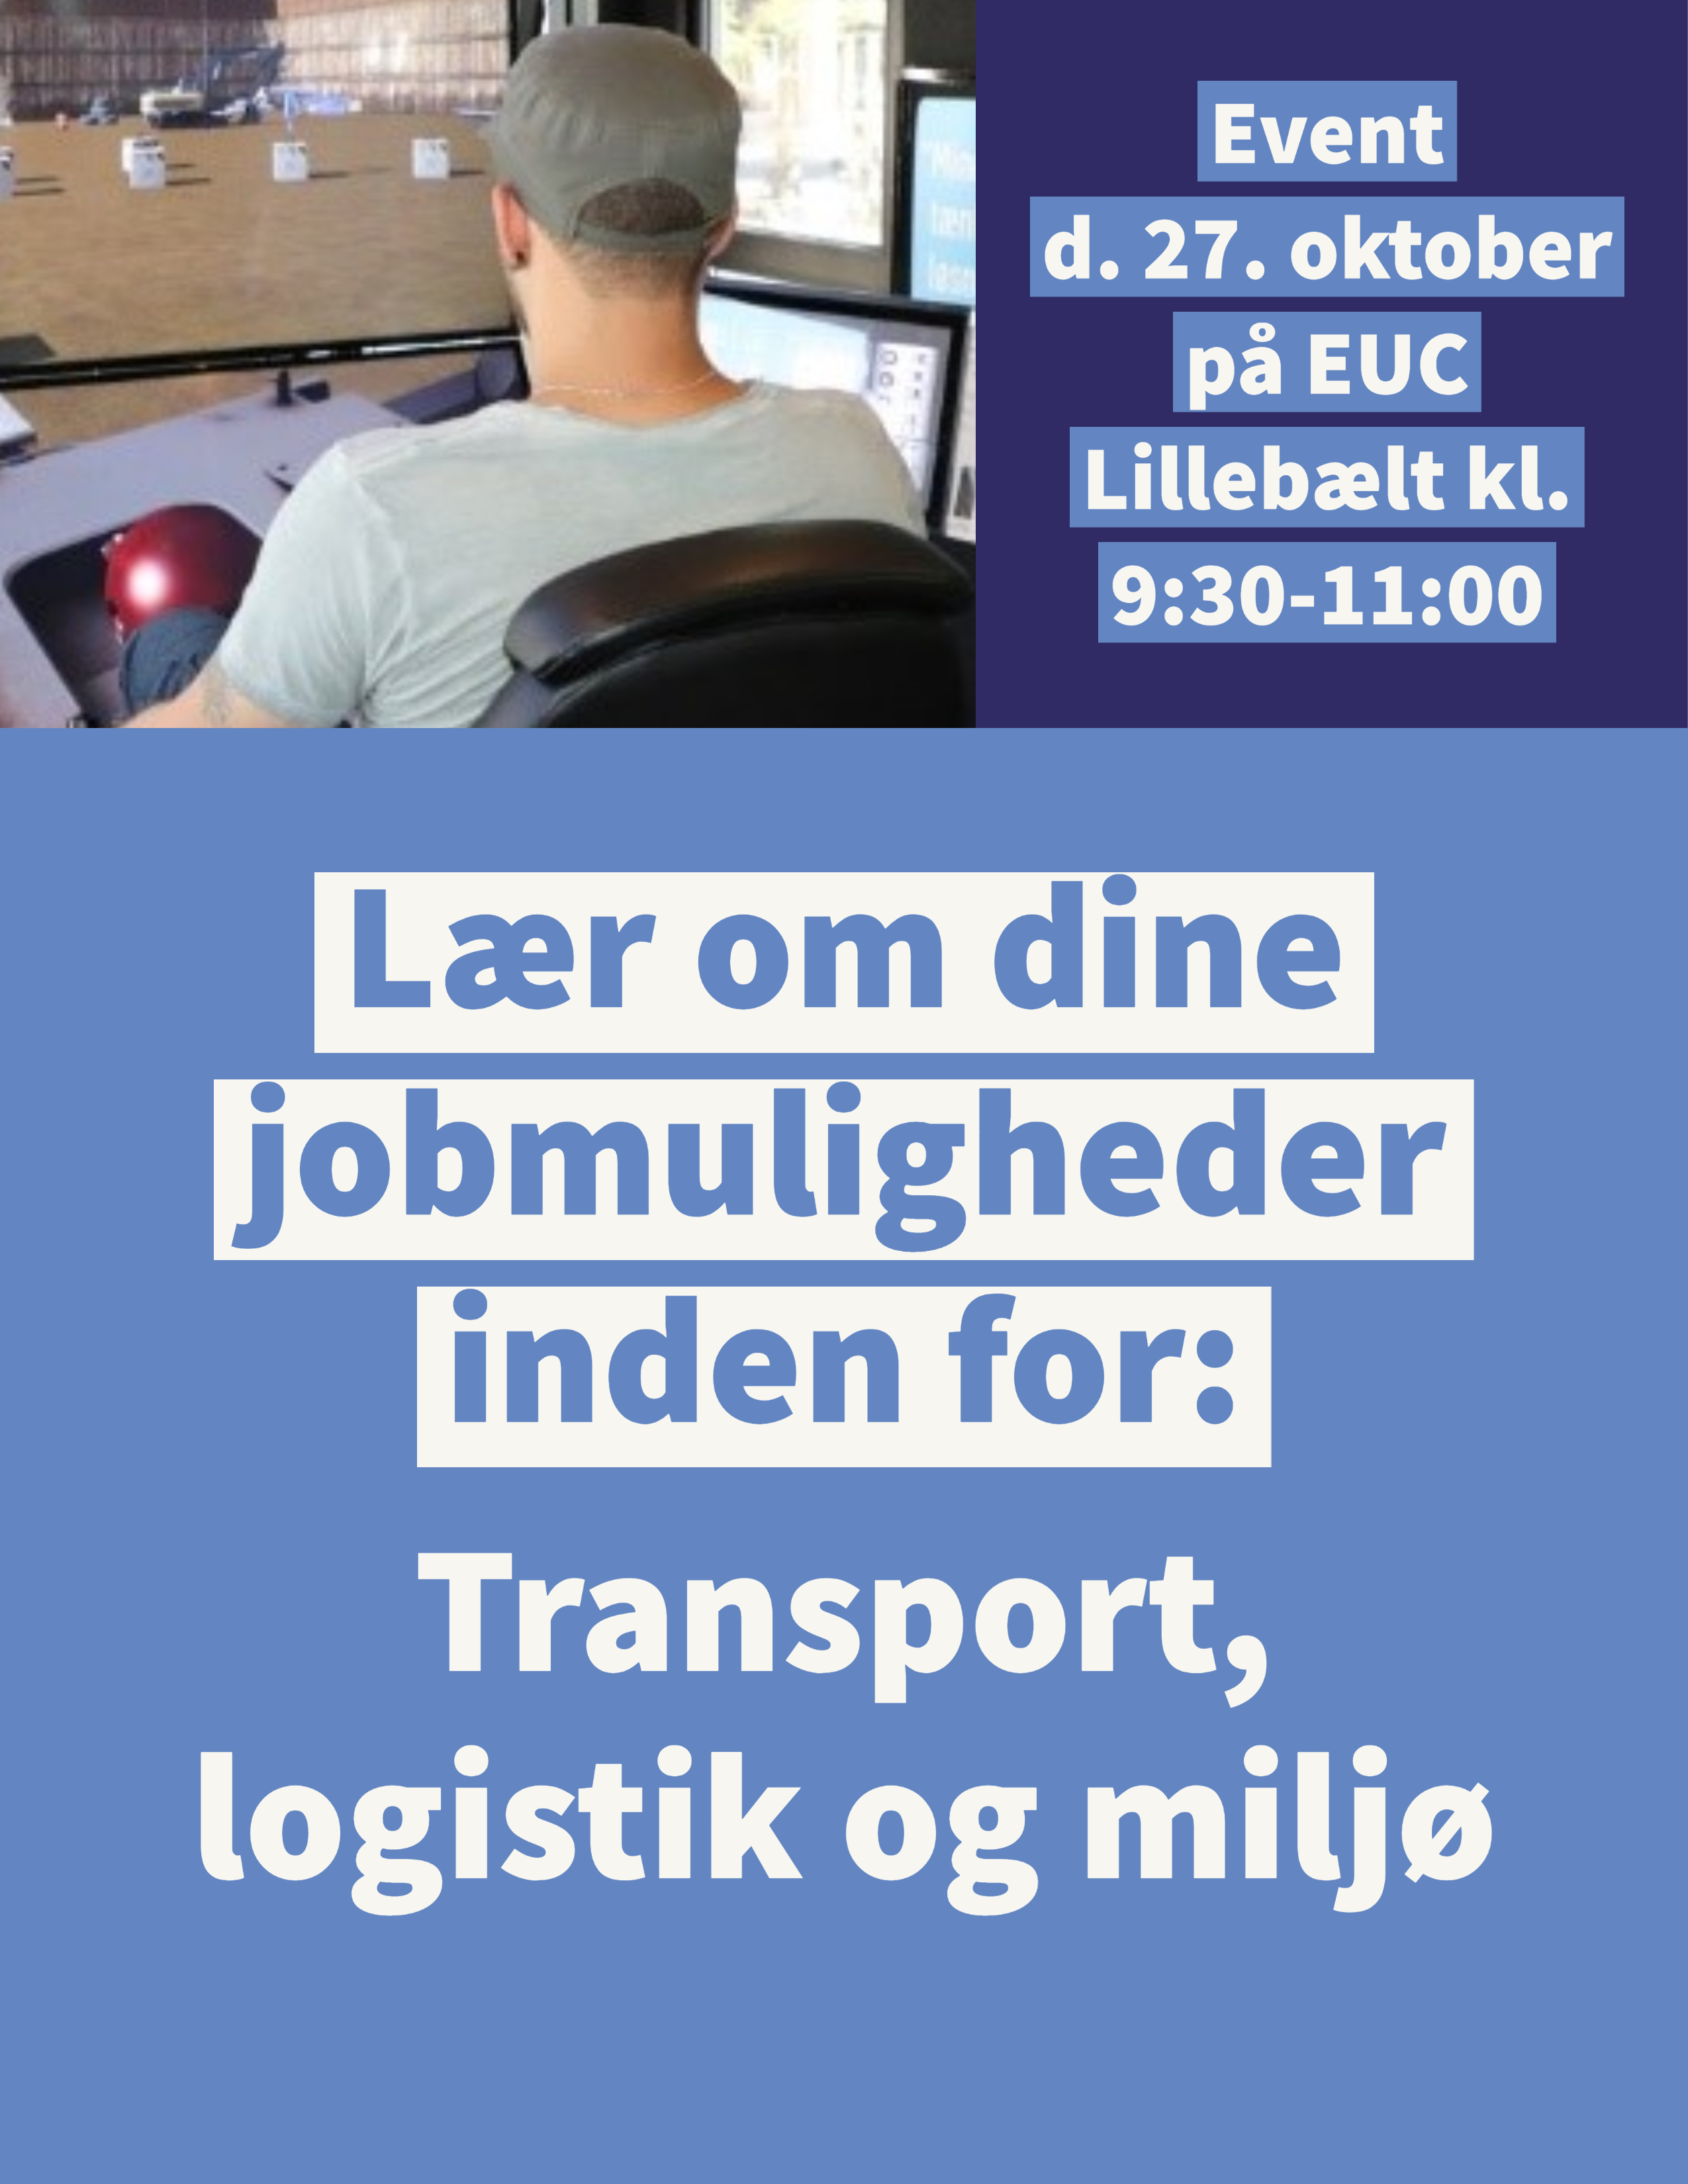 Event d. 27. oktober på EUC Lillebælt - lær om dine jobmuligheder inden for transport, logistik og miljø 